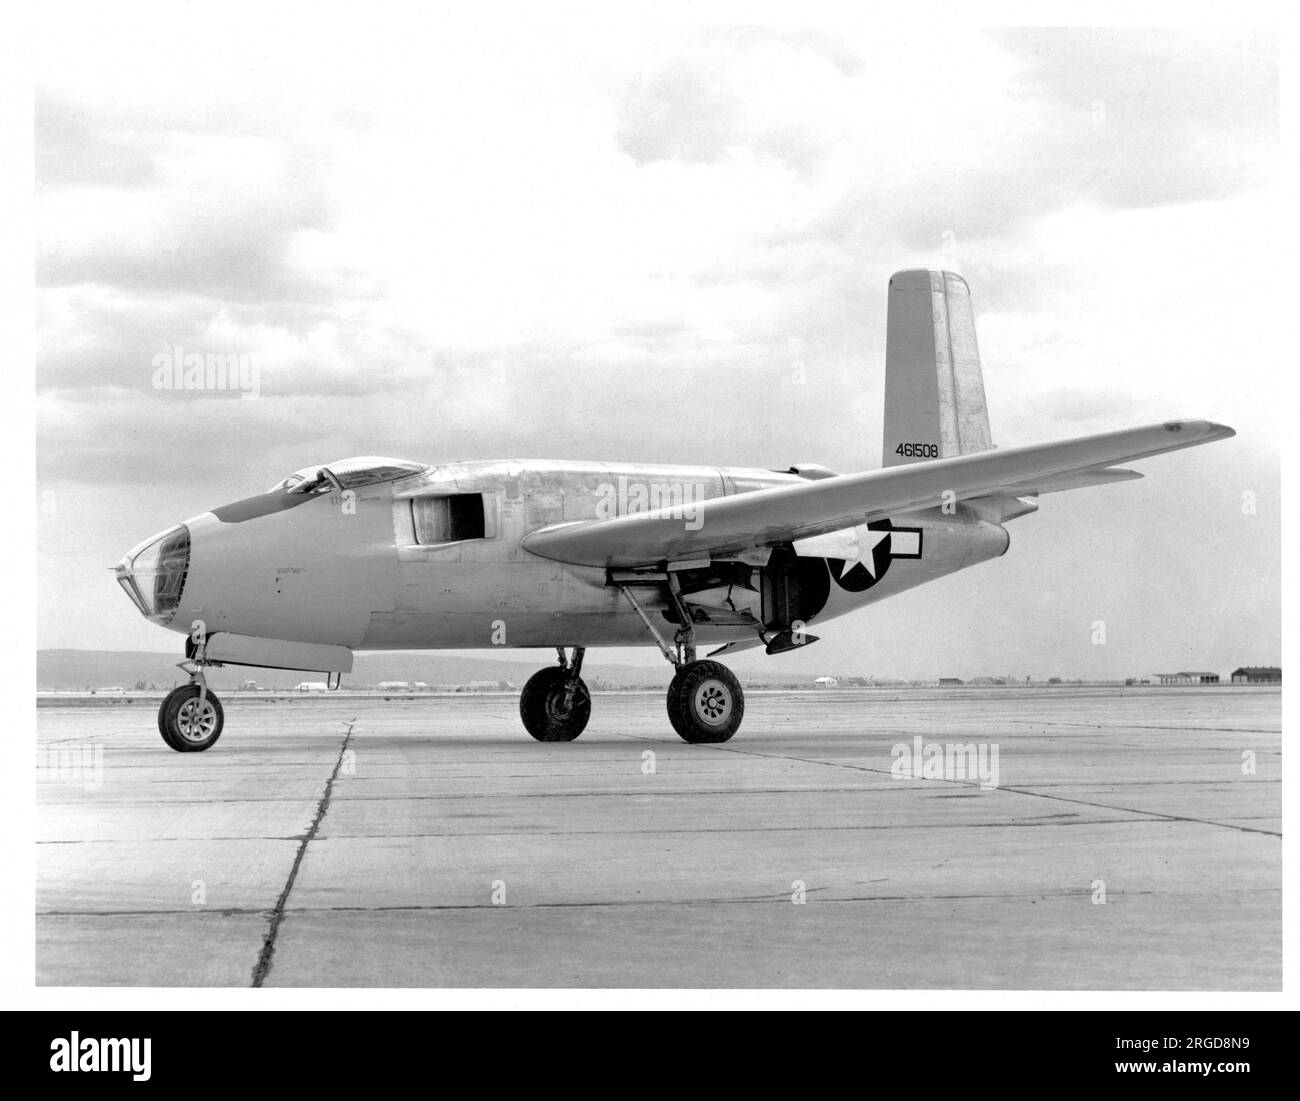 United Sates Air Force - Douglas XB-43 44-61508, erster Prototyp, der mithilfe des statischen Tests XB-42 Mixmaster Airframe hergestellt wurde, gesehen am Luftwaffenstützpunkt Muroc Army (Edwards AFB/Armstrong Flight Research Center). Stockfoto